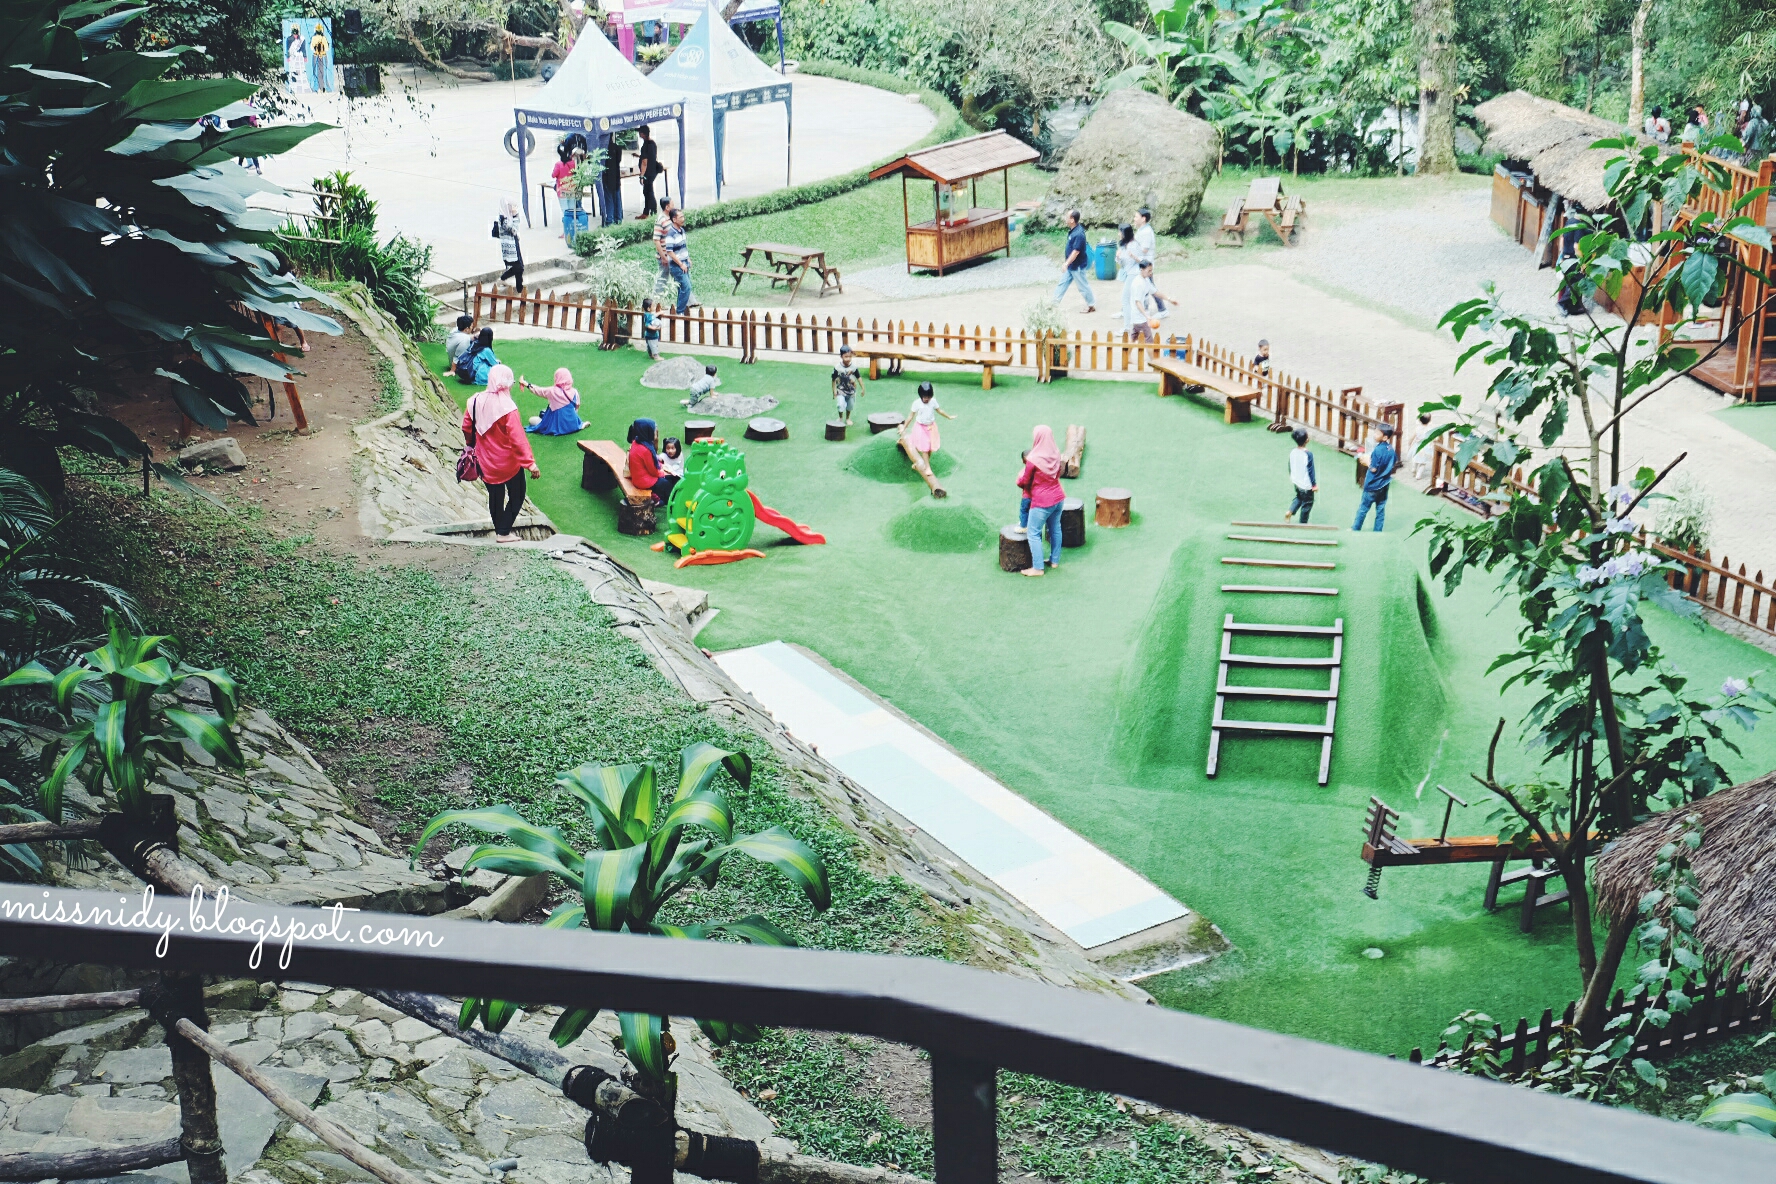 playground di maribaya bandung